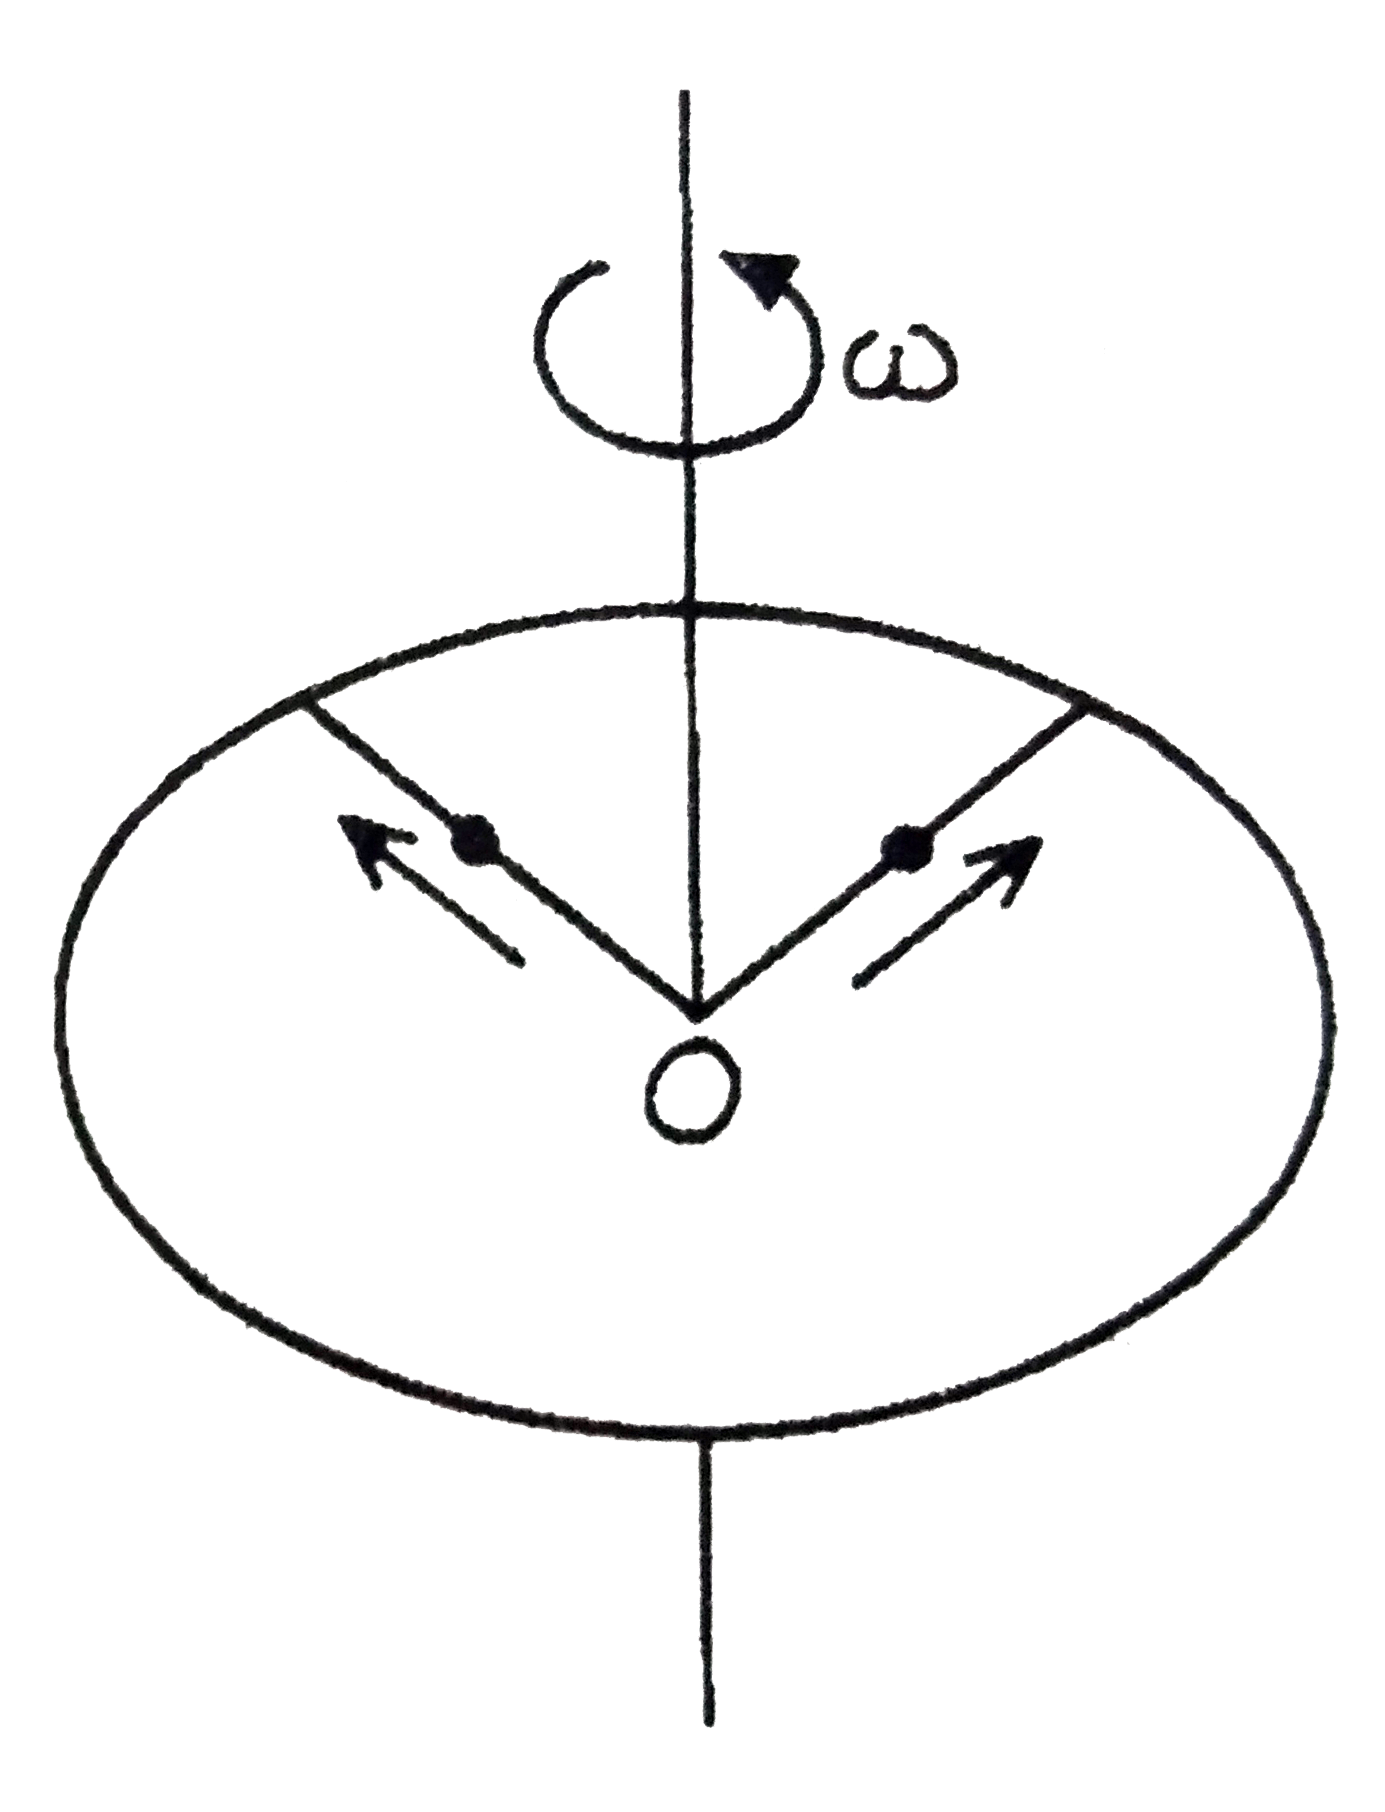 द्रव्यमान M तथा त्रिज्या R का एक छल्ला अपने केंद्र से होकर जाने वाली स्थिर‌ ऊर्ध्वाधर अक्ष के परितः कोणीय वेग omega से घूम रहा है। इस क्षण M//8 द्रव्यमान के दो बिंदु द्रव्यमान छल्ले के केंद्र O पर विराम स्थिति में है। वो दर्शाये चित्रानुसार छल्ले पर लगी द्रव्यमानहीन दो छड़ों पर त्रिज्यतः बाहर की ओर गति कर सकतेक हैं किसी क्षण पर निकाय की कोणीय गति 8/9 omega है तथा बिंदु द्रव्यमान O से 3/5R दूरी पर है। इस क्षण दूसरे बिंदु द्रव्यमान की O से दूरी होगी: